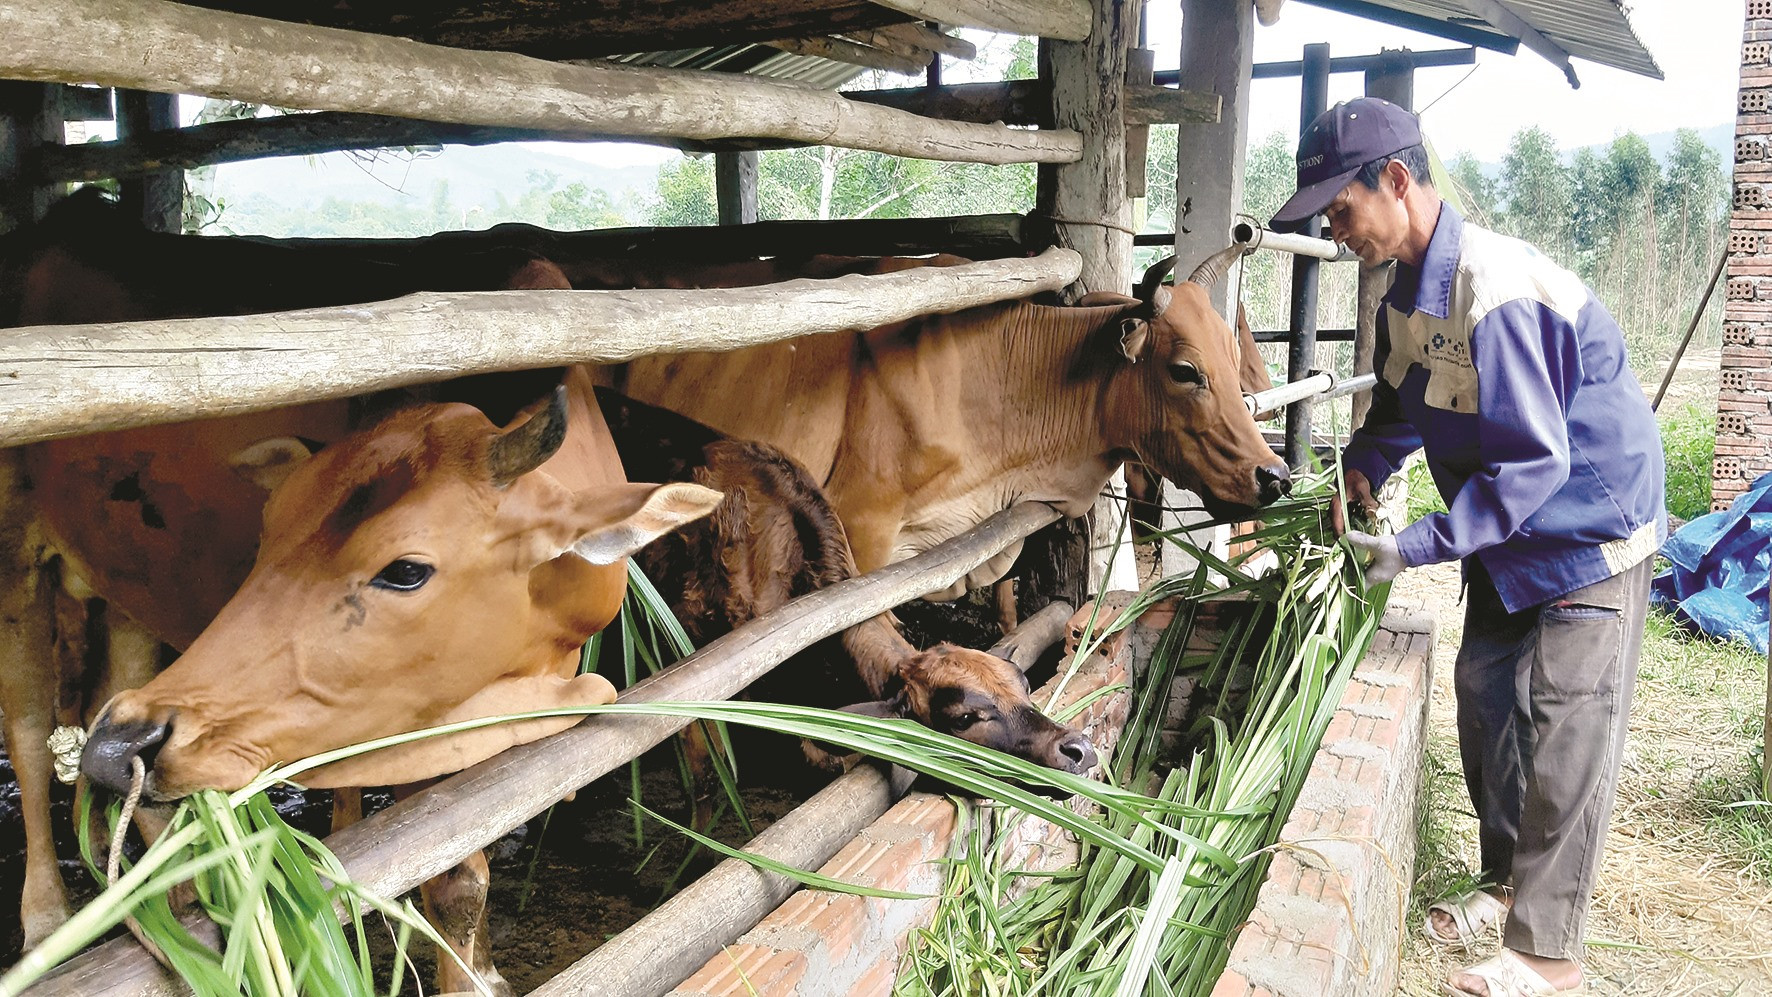 Những năm gần đây, người dân miền núi tập trung đầu tư xây dựng mô hình nuôi bò lai thâm canh để nâng cao nguồn thu nhập, cải thiện cuộc sống.